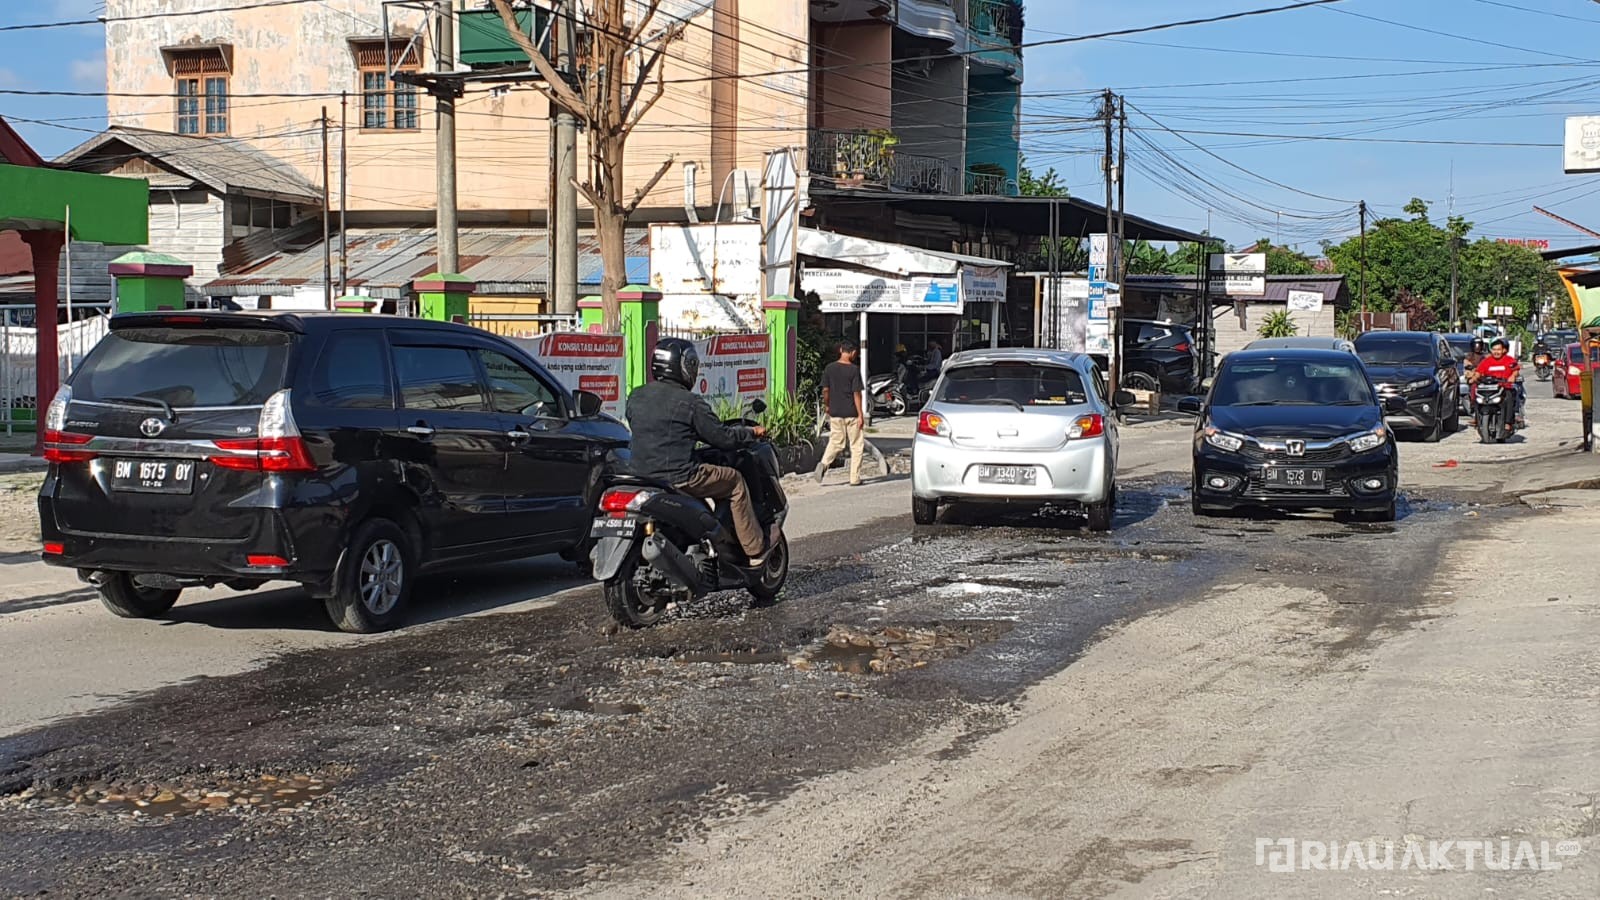 DPRD Pekanbaru: Pj Walikota Harus Fokus Atasi Banjir di Pekanbaru